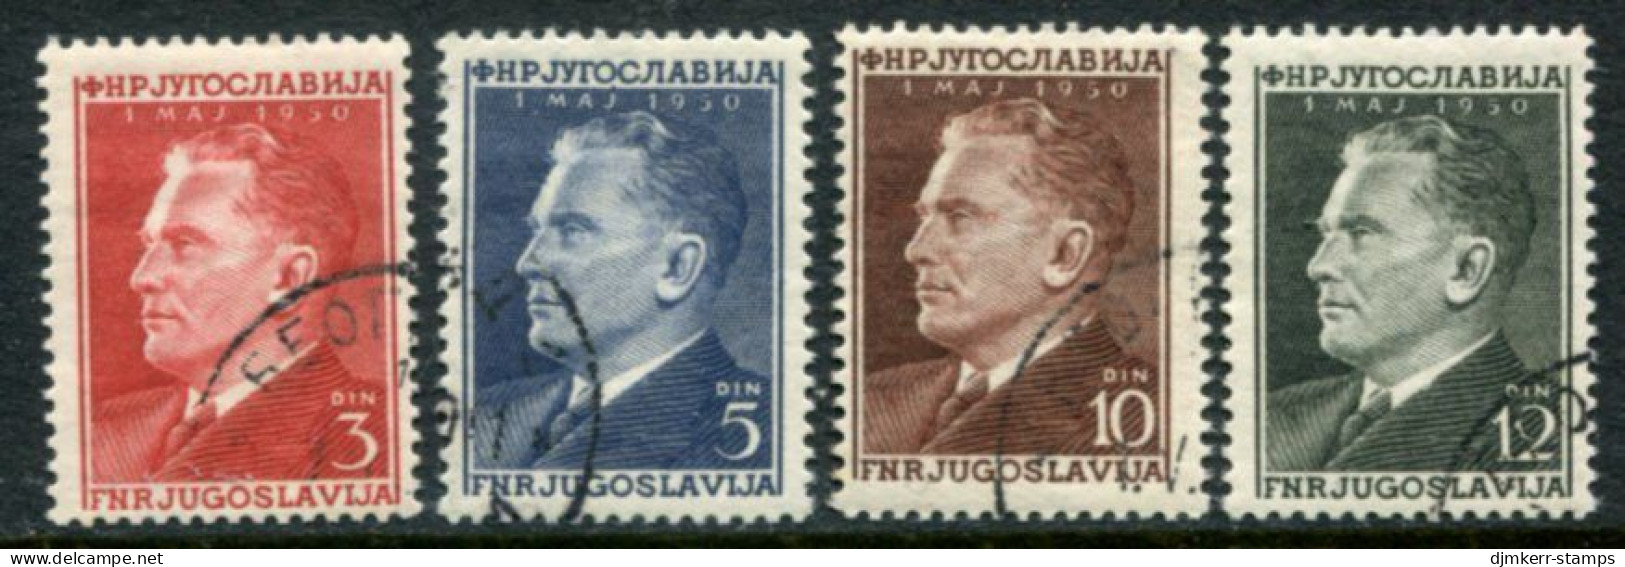 YUGOSLAVIA 1950 Labour Day - Tito Used.  Michel 605-08 - Gebruikt